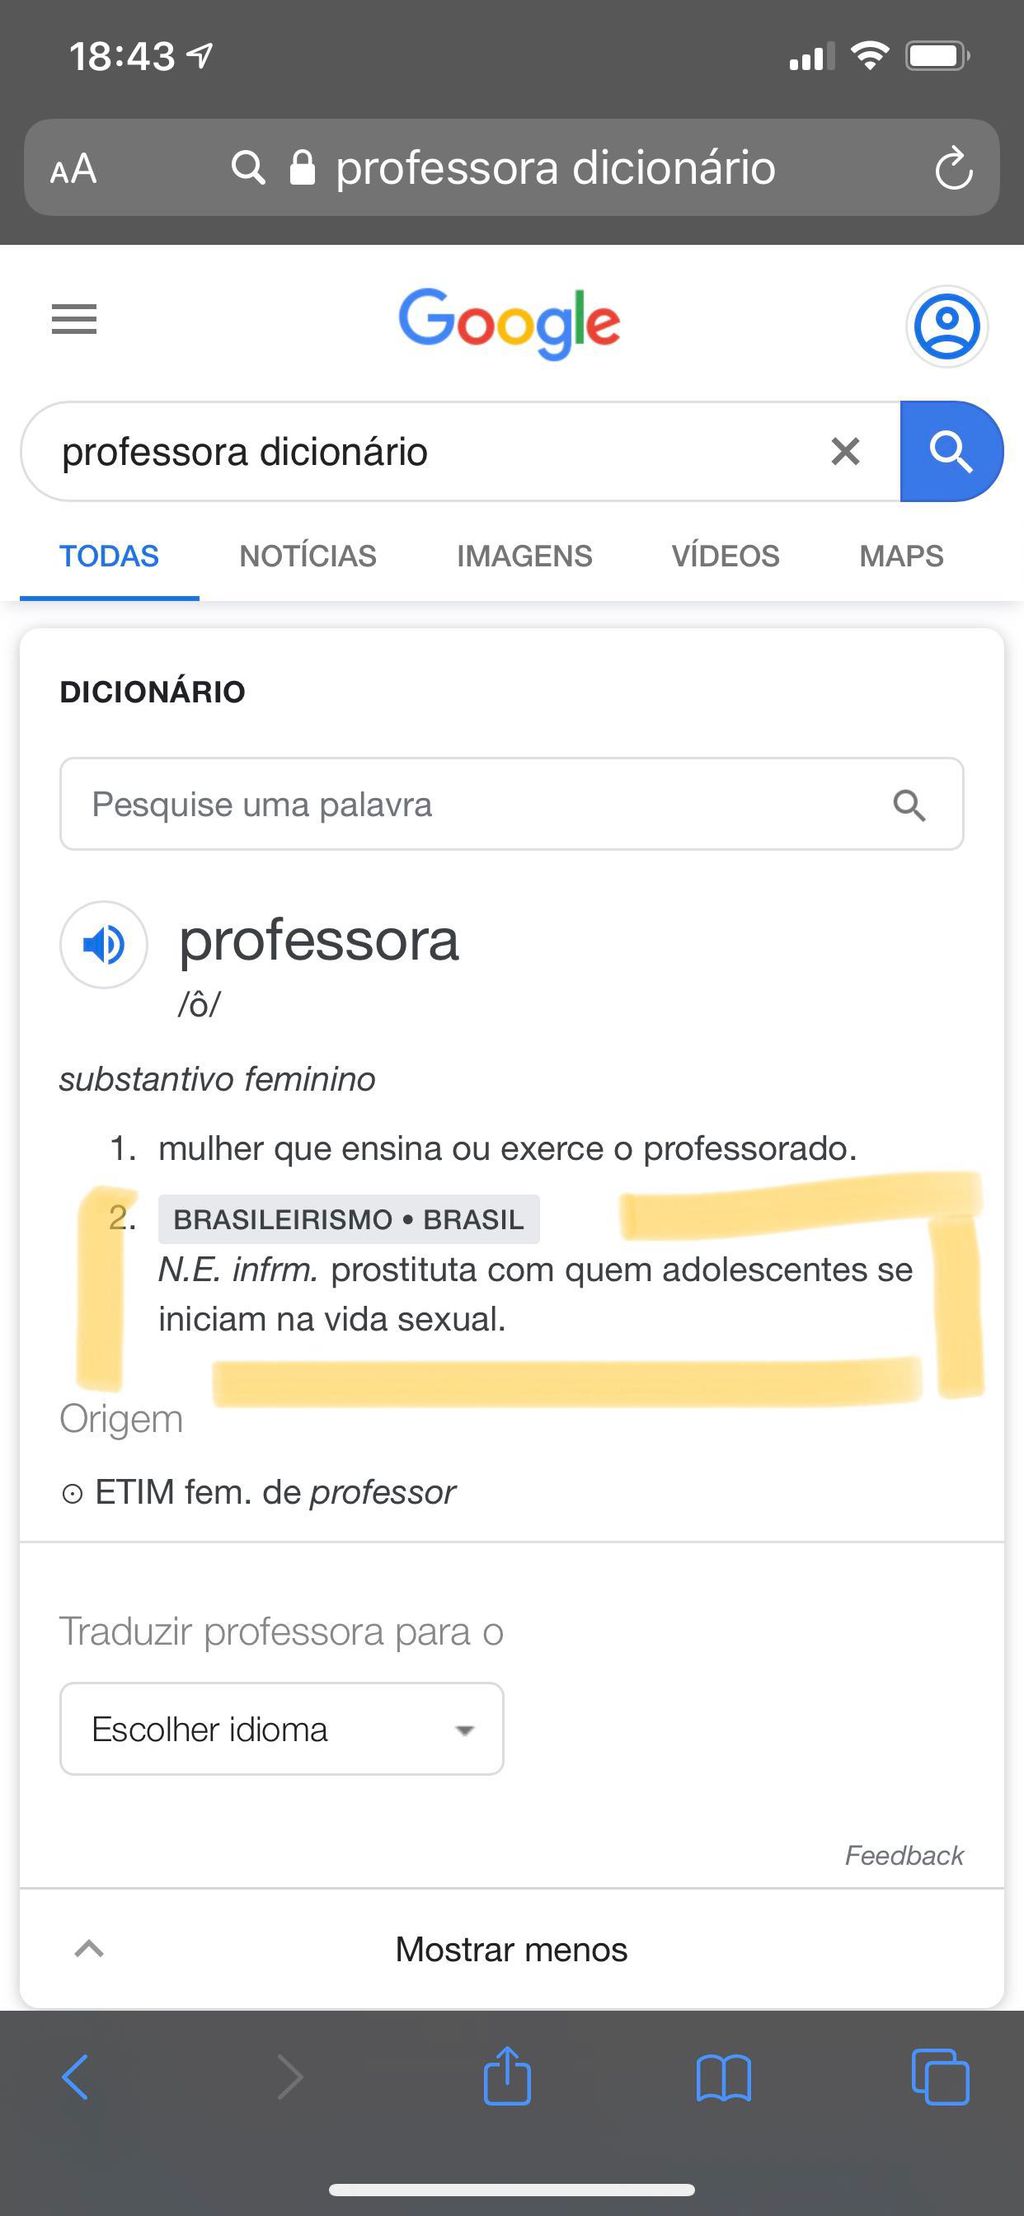 Resultado do Google associa "professora" a "prostituta" (Foto: Captura de tela)